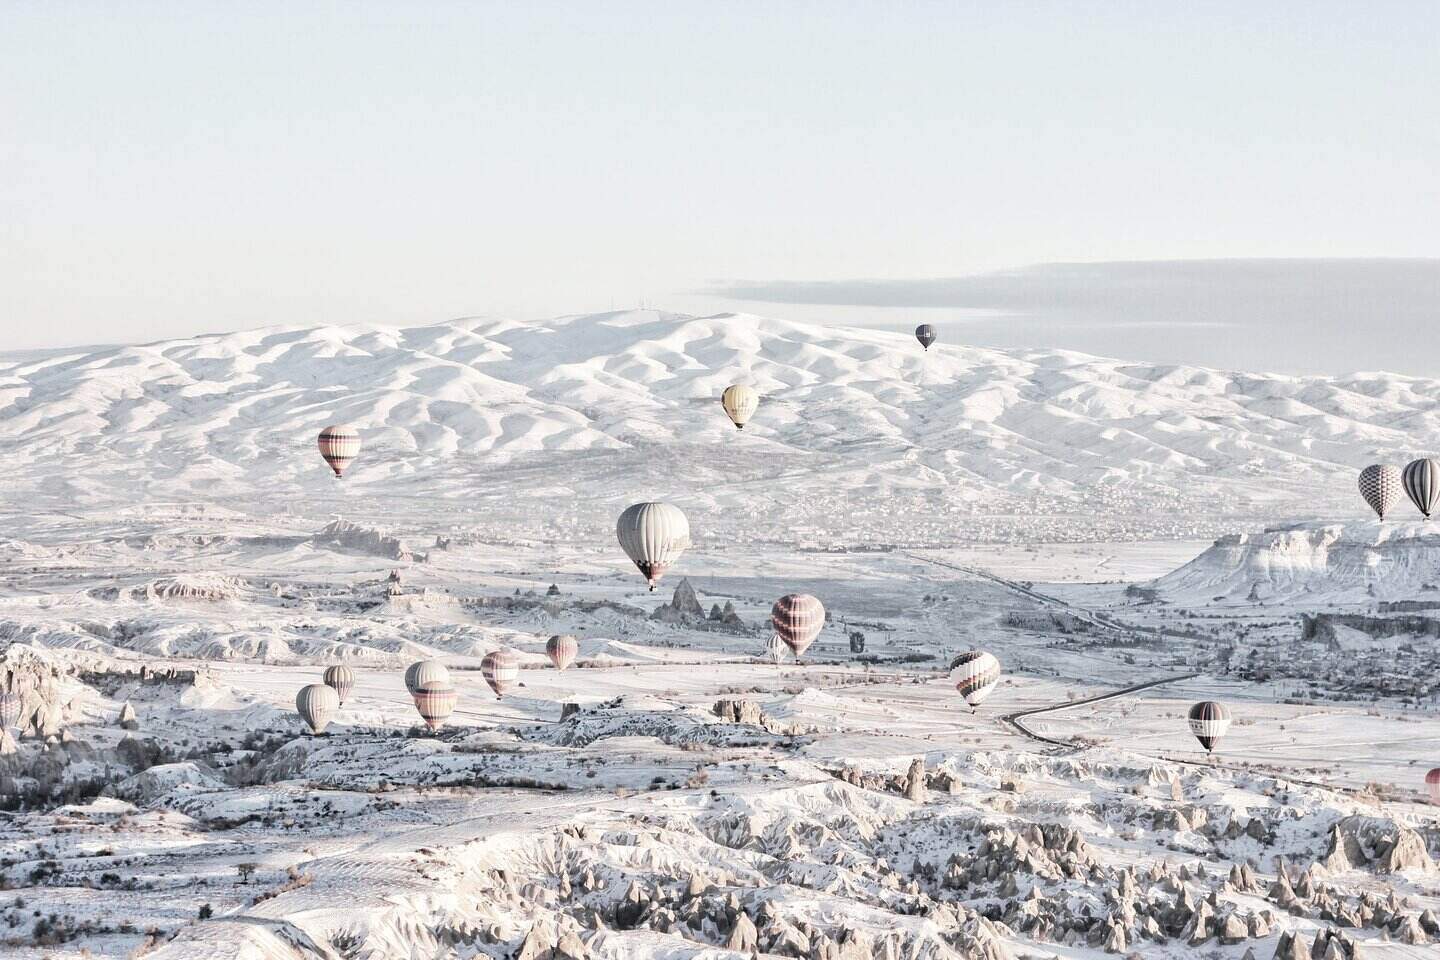 hafta sonu kış tatili, kapadokya kar manzarası, kış mevsiminde balon turu